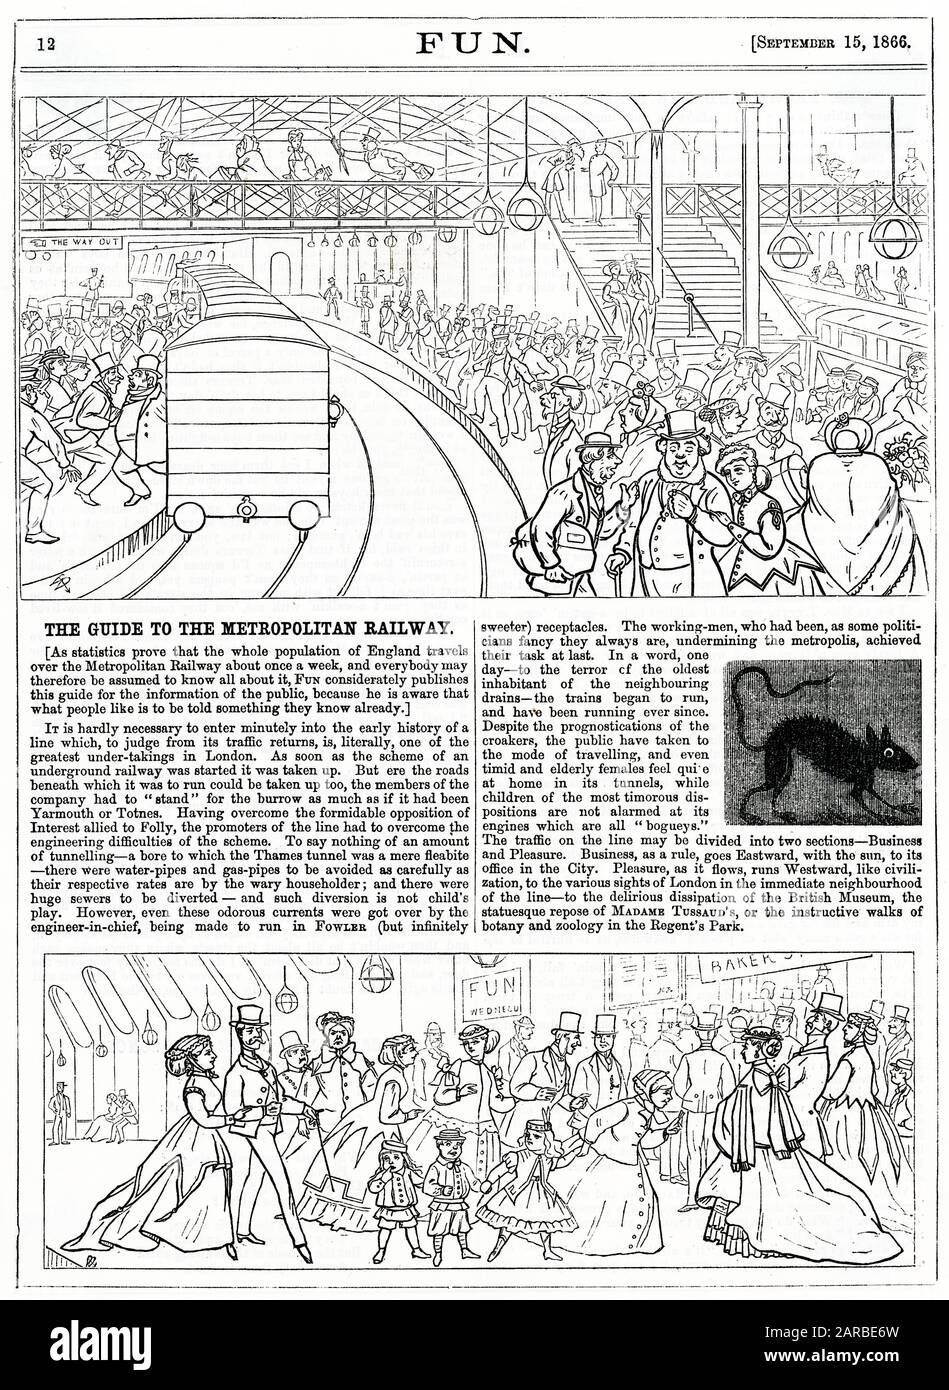 Dessins animés dans 'Fun', 1866. Le Guide du chemin de fer métropolitain. Un commentaire humoristique sur la popularité du nouveau métro londonien, montrant des gens voyageant pour affaires et pour le plaisir, et l'un des «plus vieux habitants» des égouts souterrains, un rat effrayé! Banque D'Images